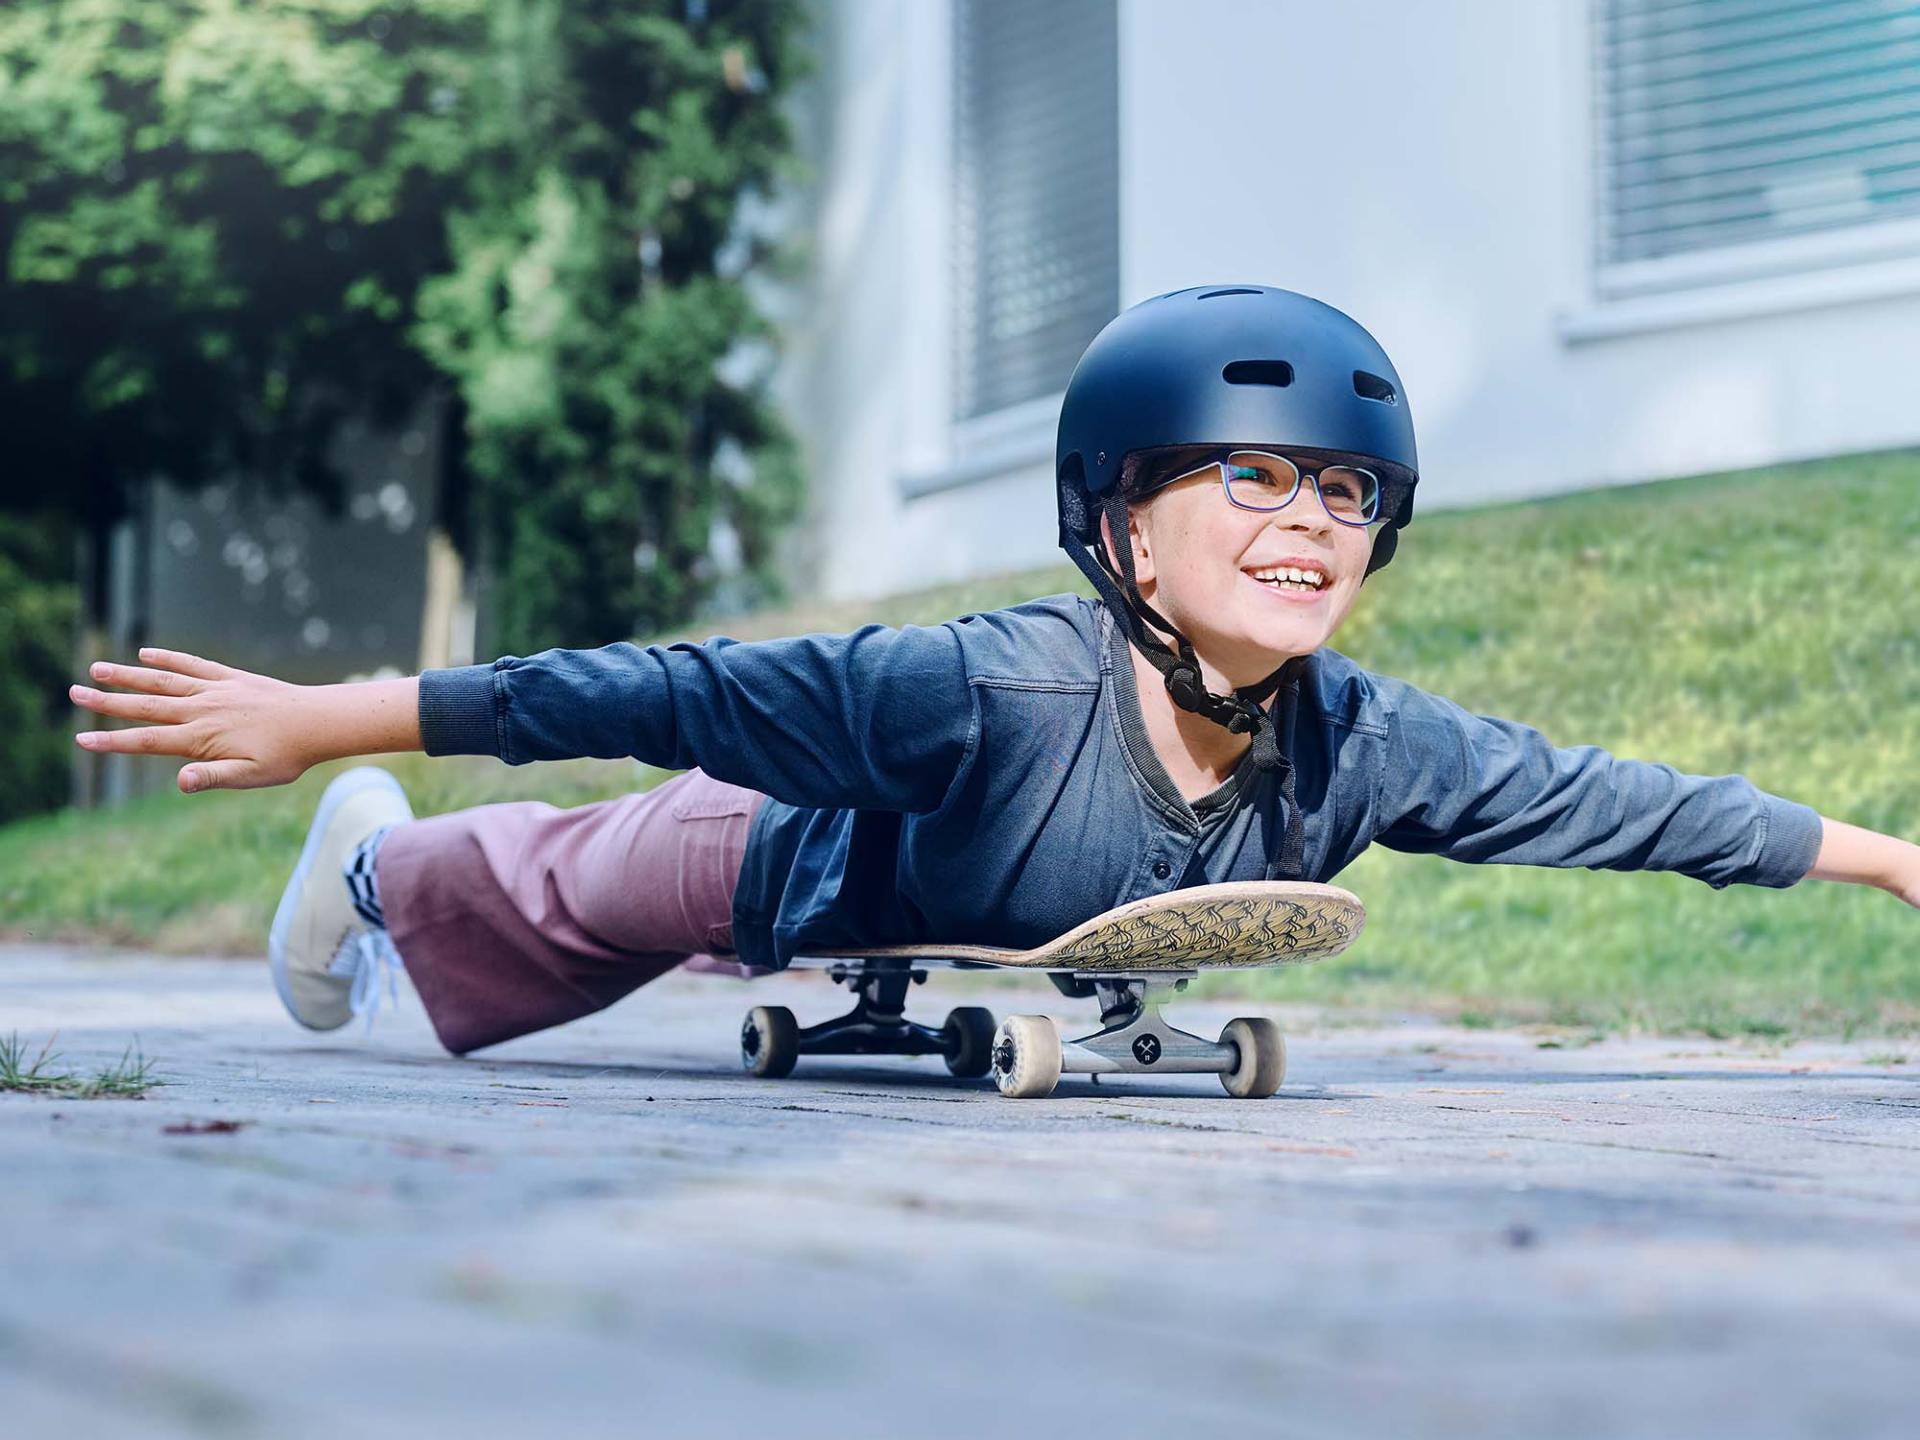 En pige med hjelm på og briller kører ned ad vejen liggende på et skateboard og strækker armene ud.